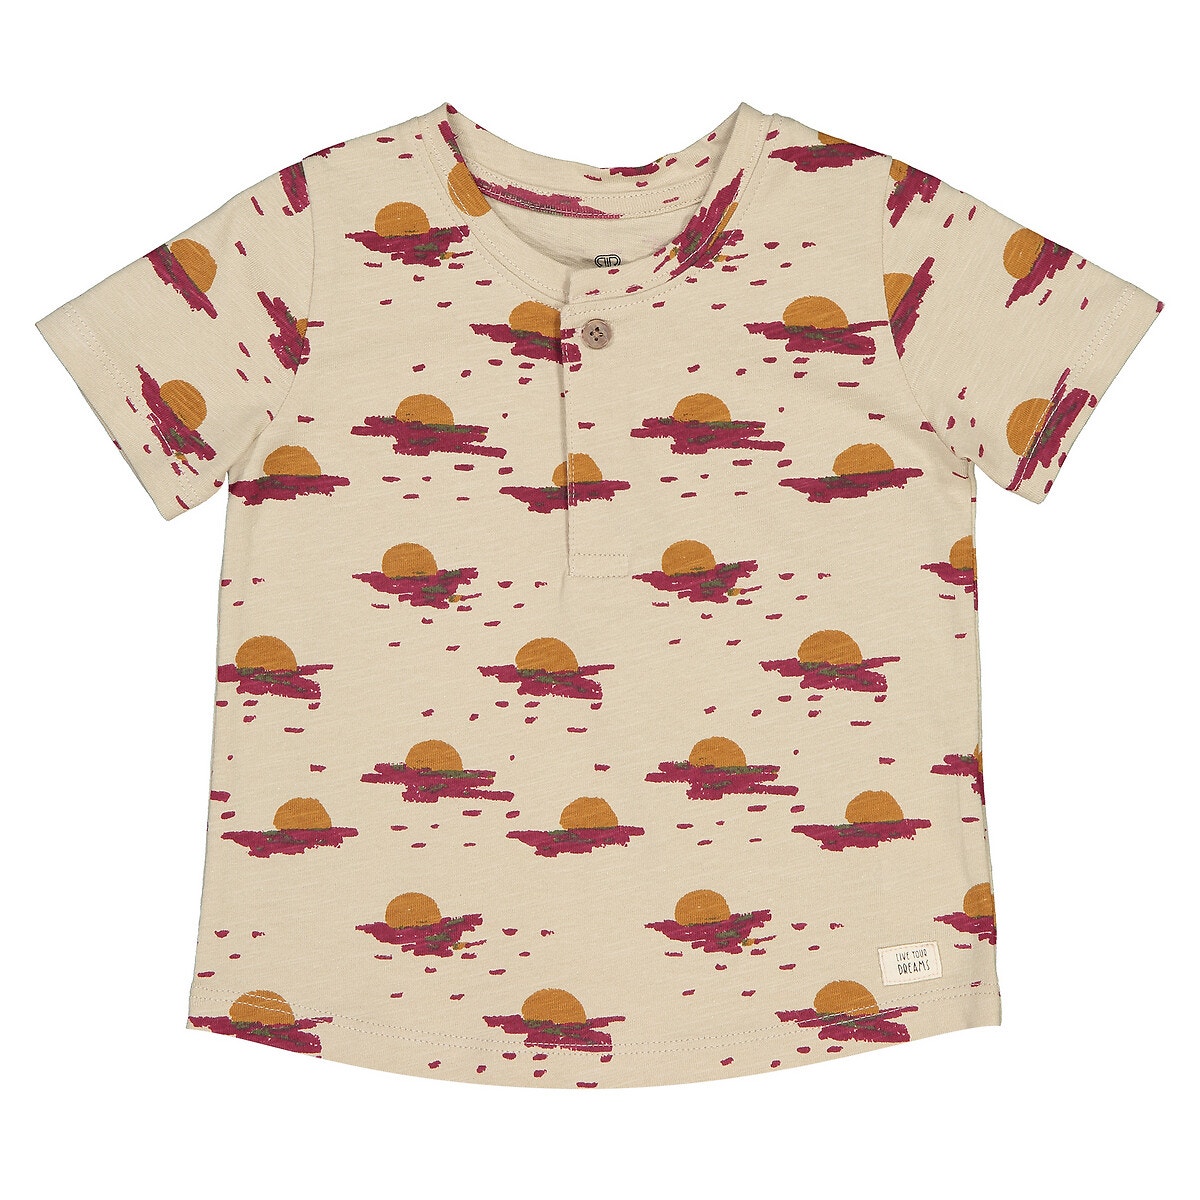 ΠΑΙΔΙ | Μπλούζες & Πουκάμισα | T-shirts Εμπριμέ μπλούζα από οργανικό βαμβάκι, 1 μηνός - 4 ετών